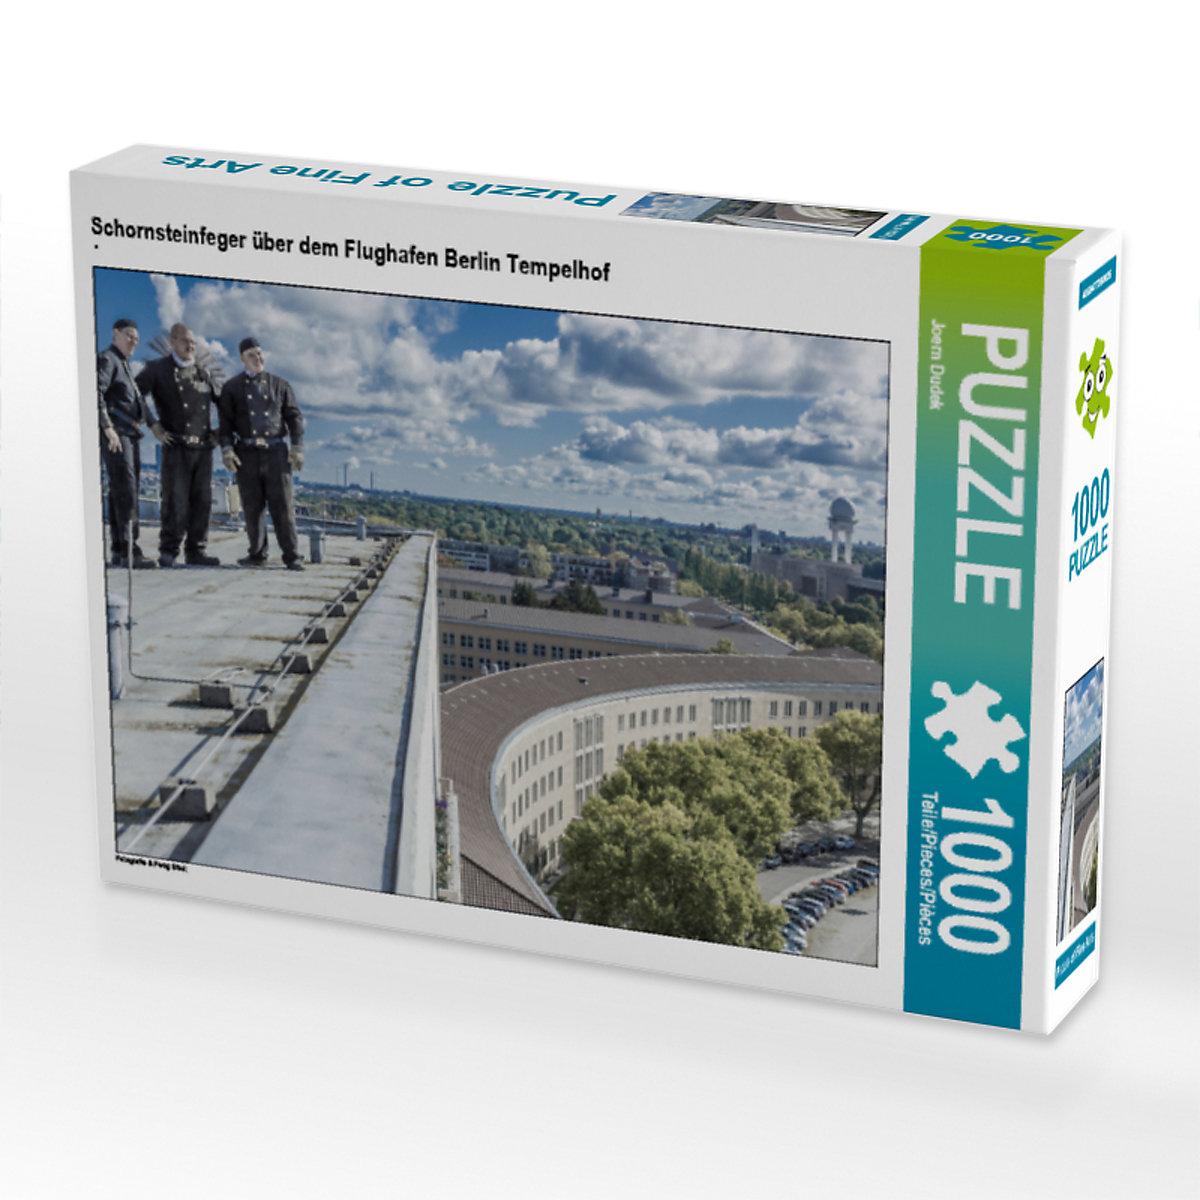 CALVENDO® Puzzle CALVENDO Puzzle Schornsteinfeger über dem Flughafen Berlin Tempelhof 1000 Teile Foto-Puzzle für glückliche Stunden